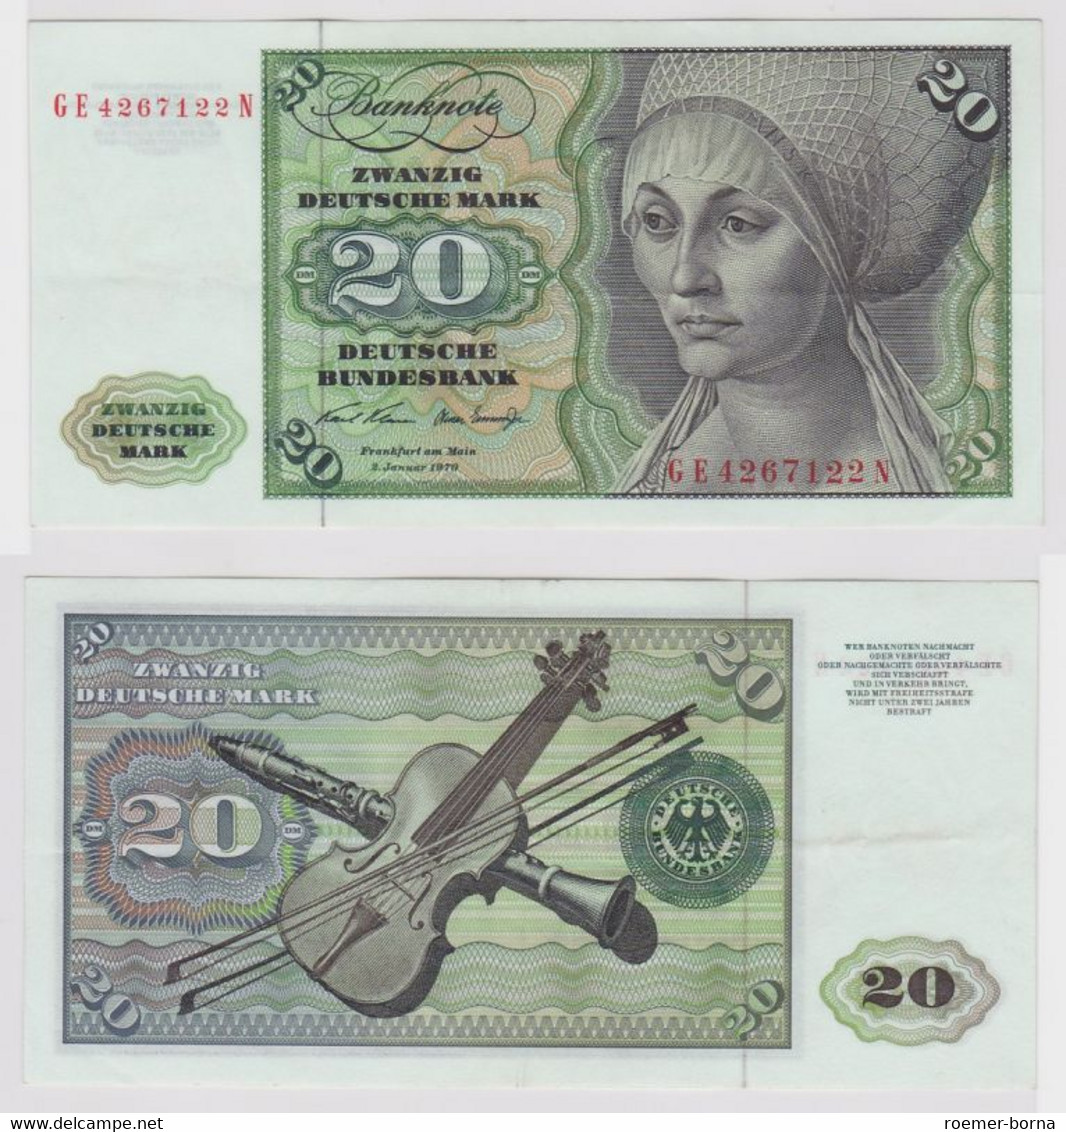 T148148 Banknote 20 DM Deutsche Mark Ro. 271b Schein 2.Jan. 1970 KN GE 4267122 N - 20 DM